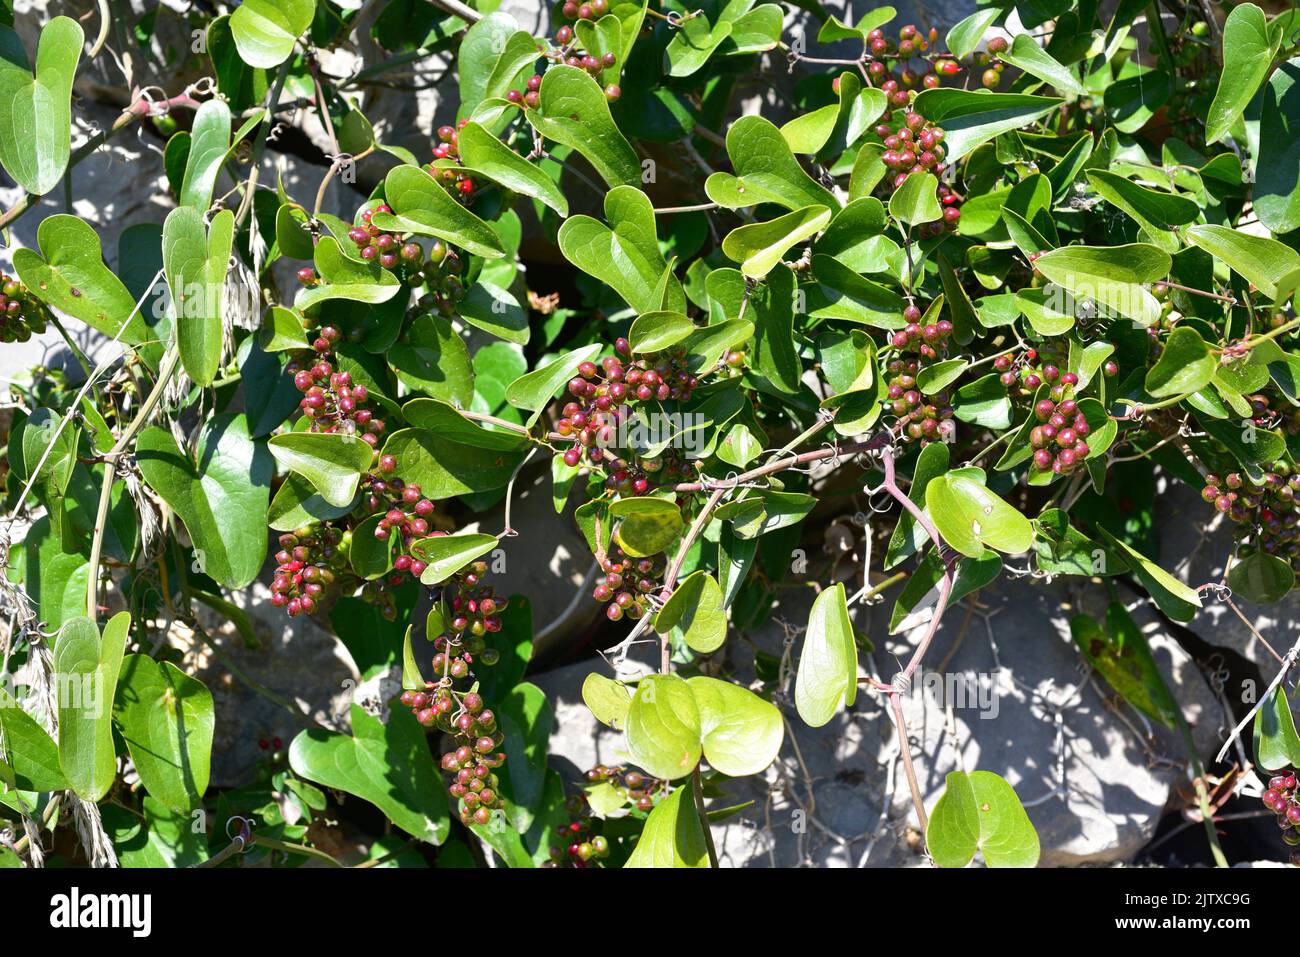 El bindweed o sarsaparille (Smilax aspera) es una planta espinosa originaria del sur de Europa, África central y Asia. Esta foto fue tomada en Foto de stock